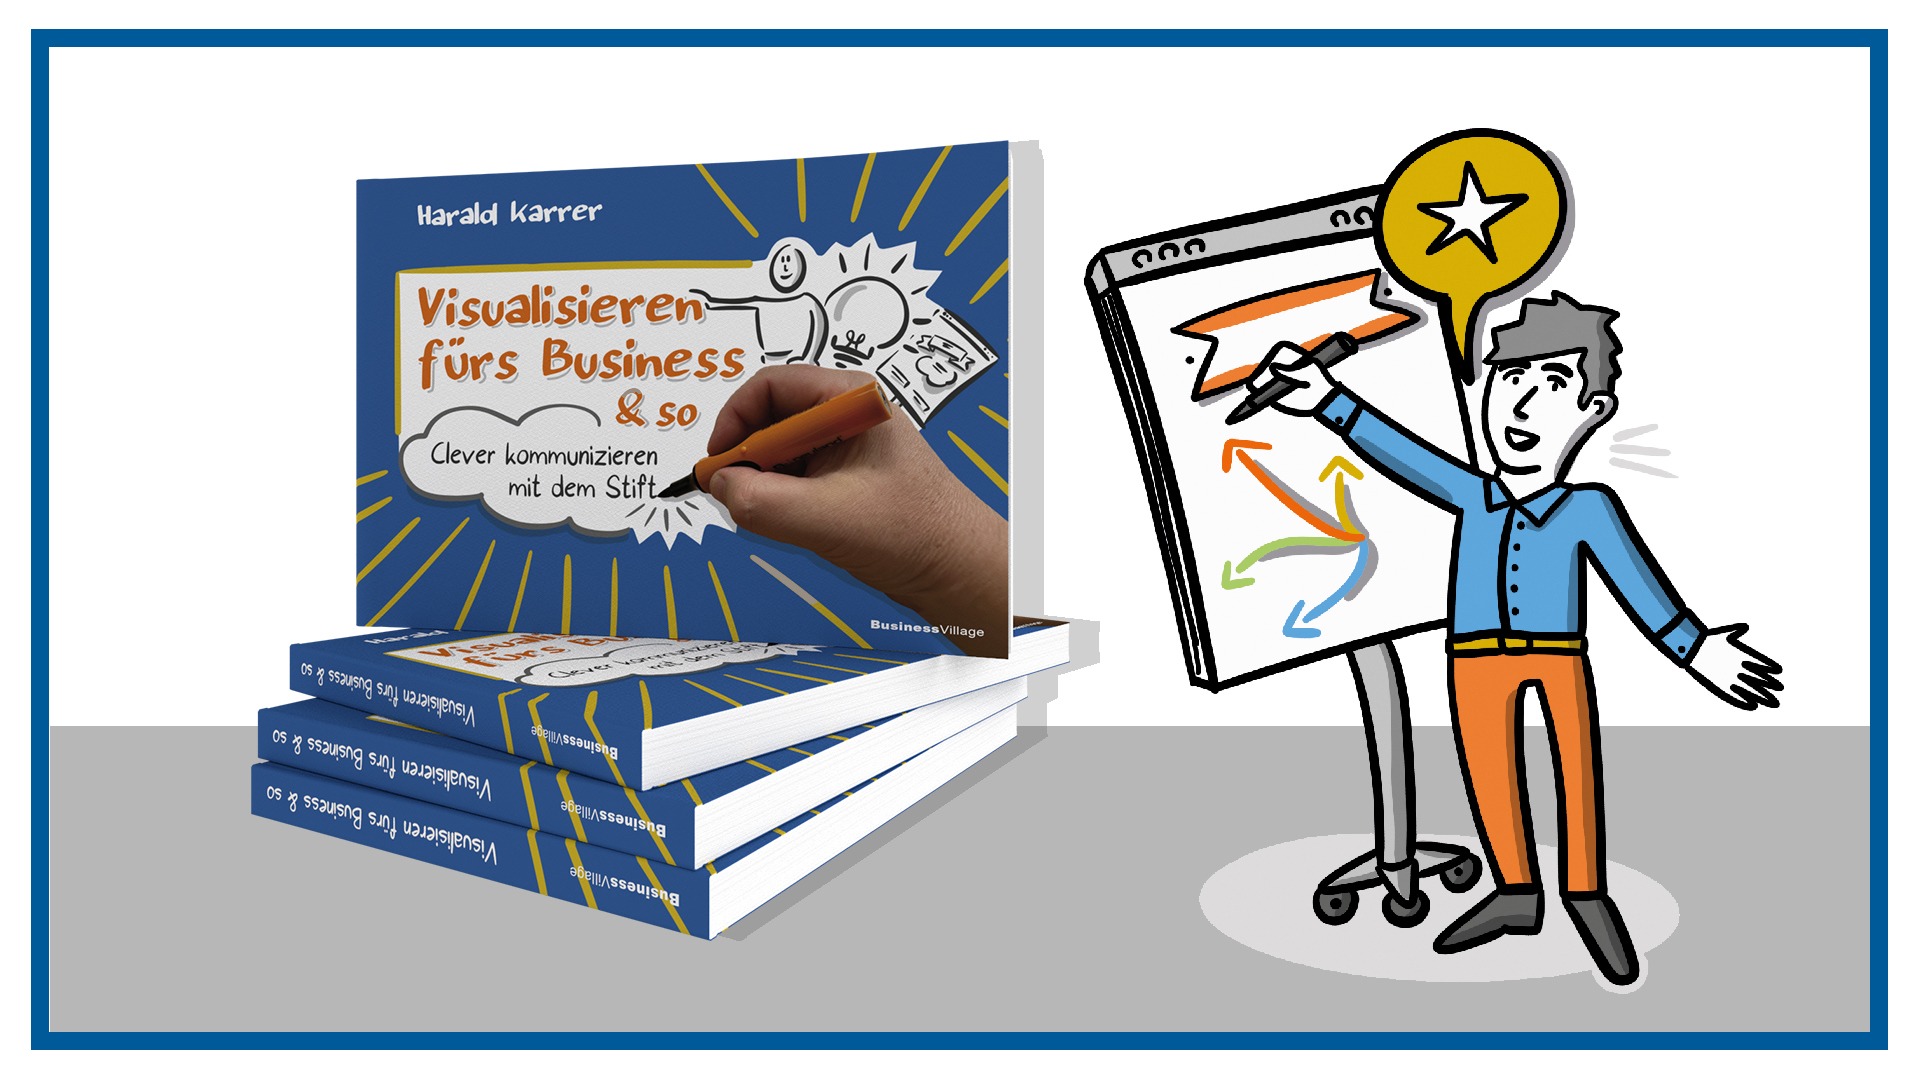 Buch von Harald Karrer − "Visualisieren fürs Business & so", erschienen im BusinessVillage Verlag.